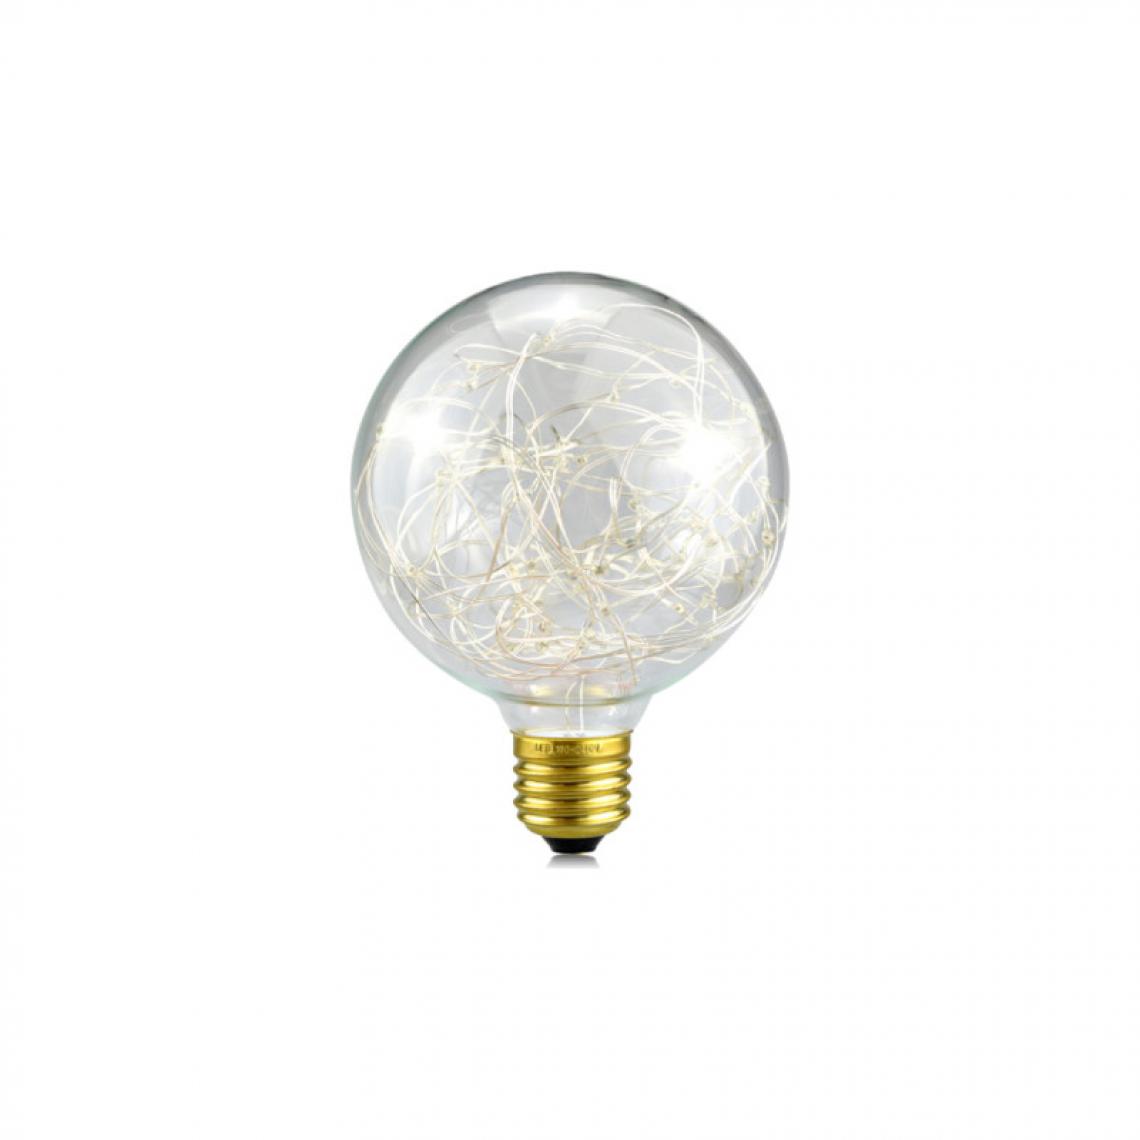 Xxcell - Ampoule LED globe blanche à fil de cuivre XXCELL - 2 W - 6500 K - E27 - Ampoules LED